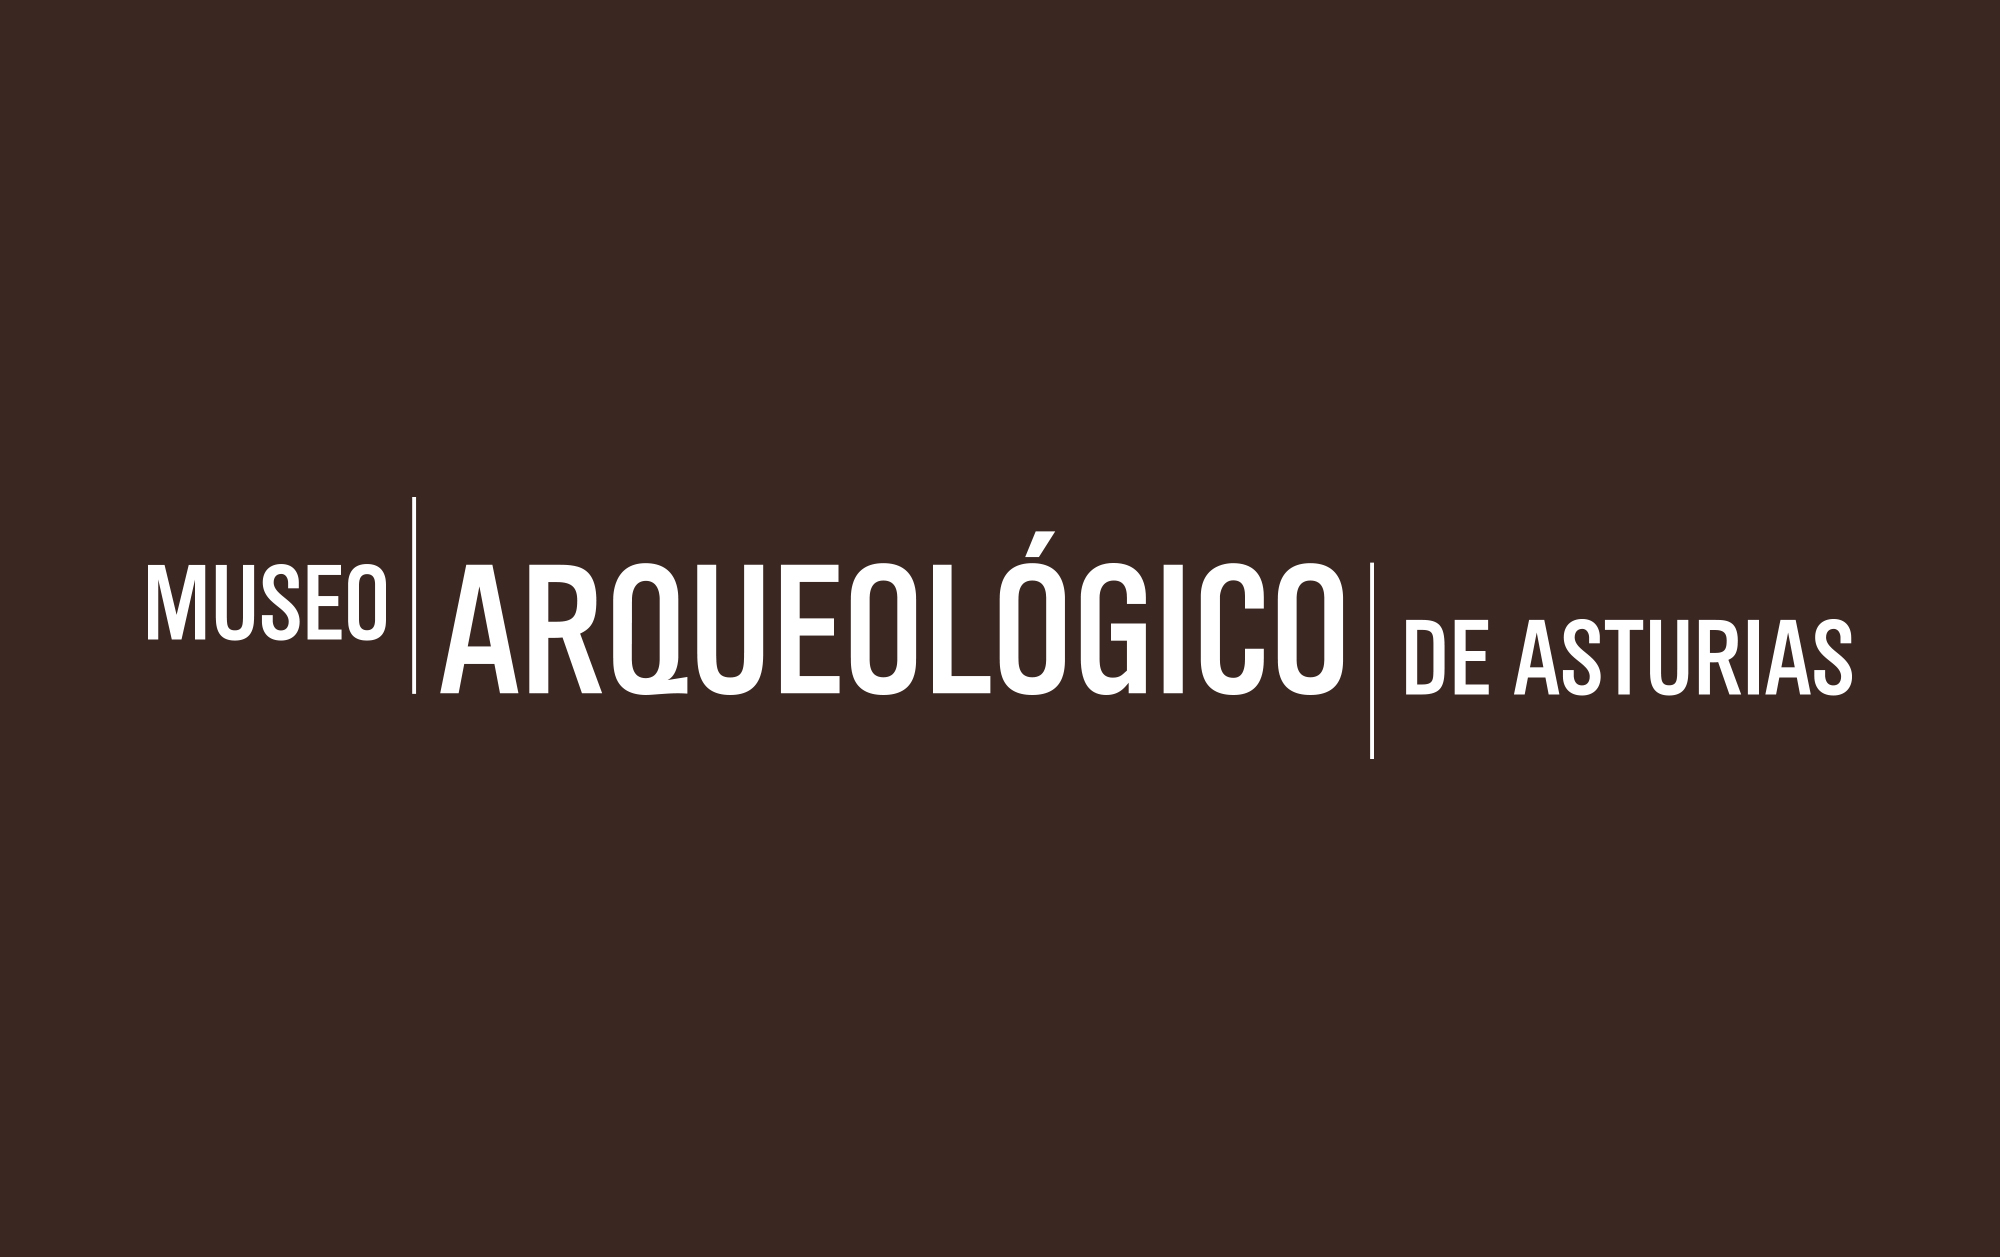 jorge_lorenzo_museo_arqueologico_asturias_12_2